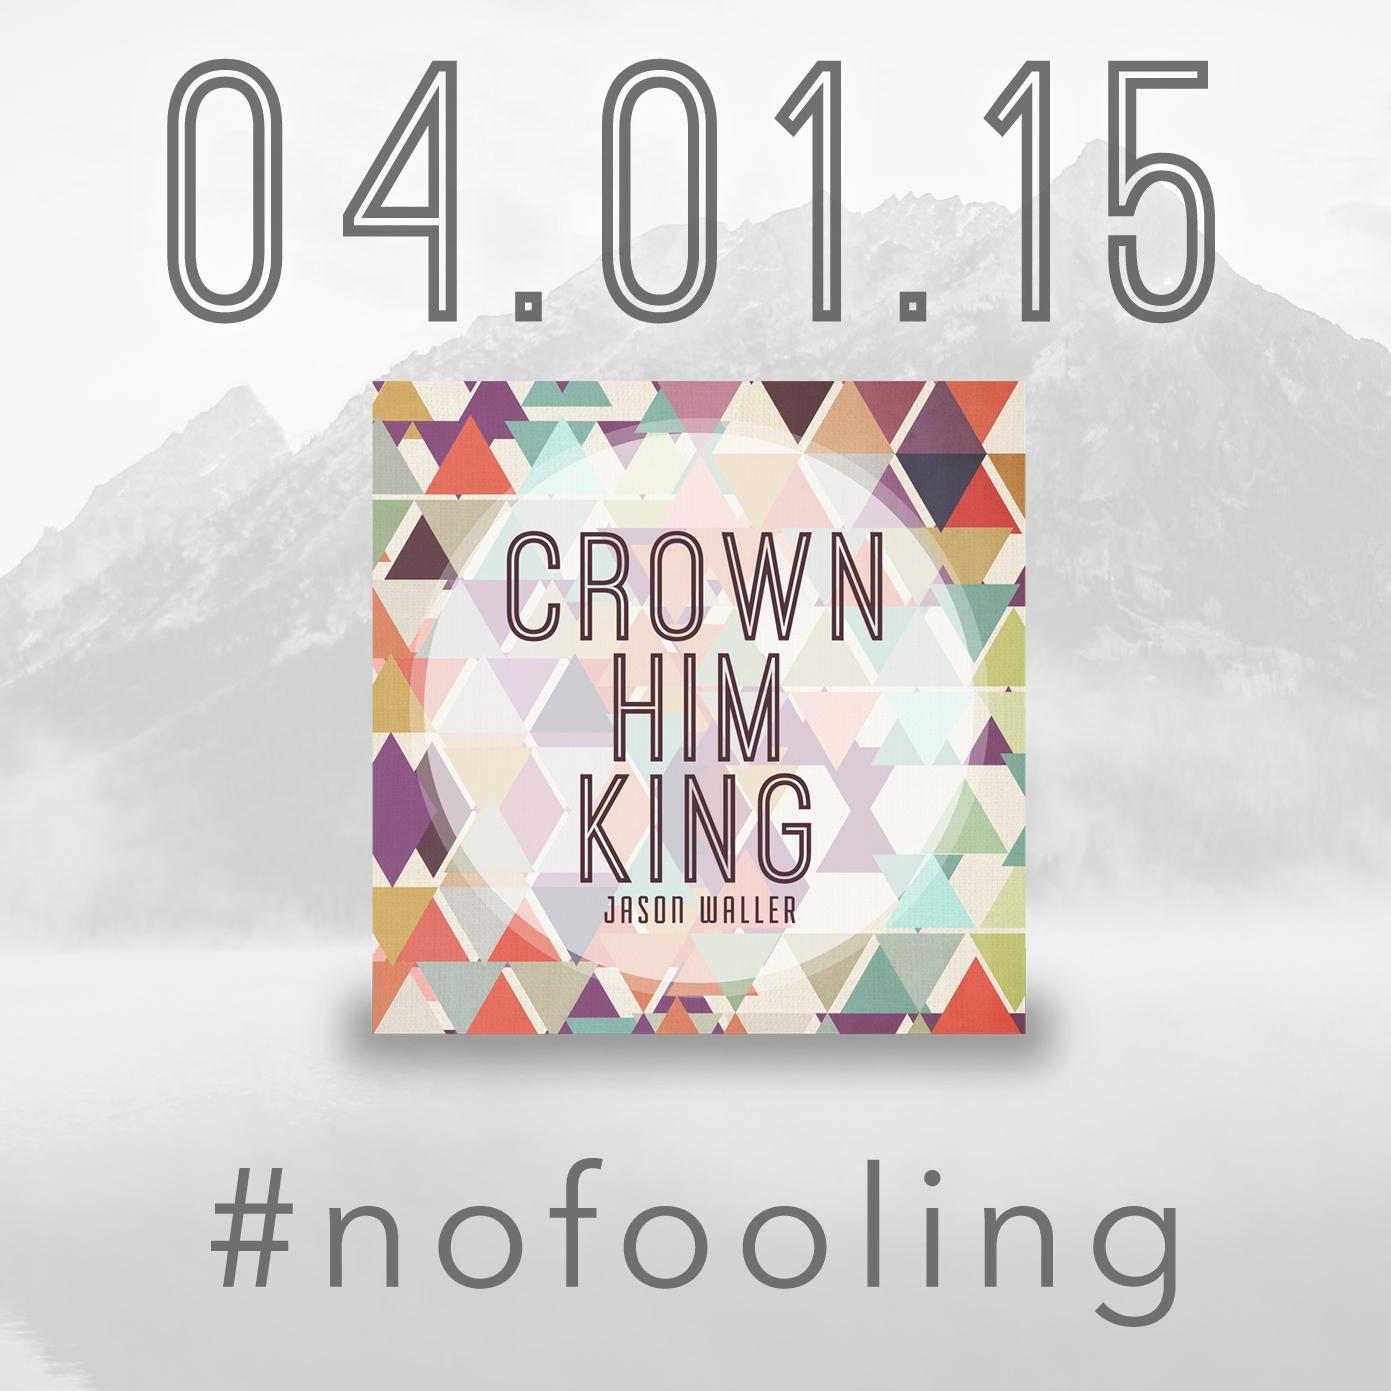 broken but singing. Crown Him King on iTunes: https://t.co/iC6k8K0Gye